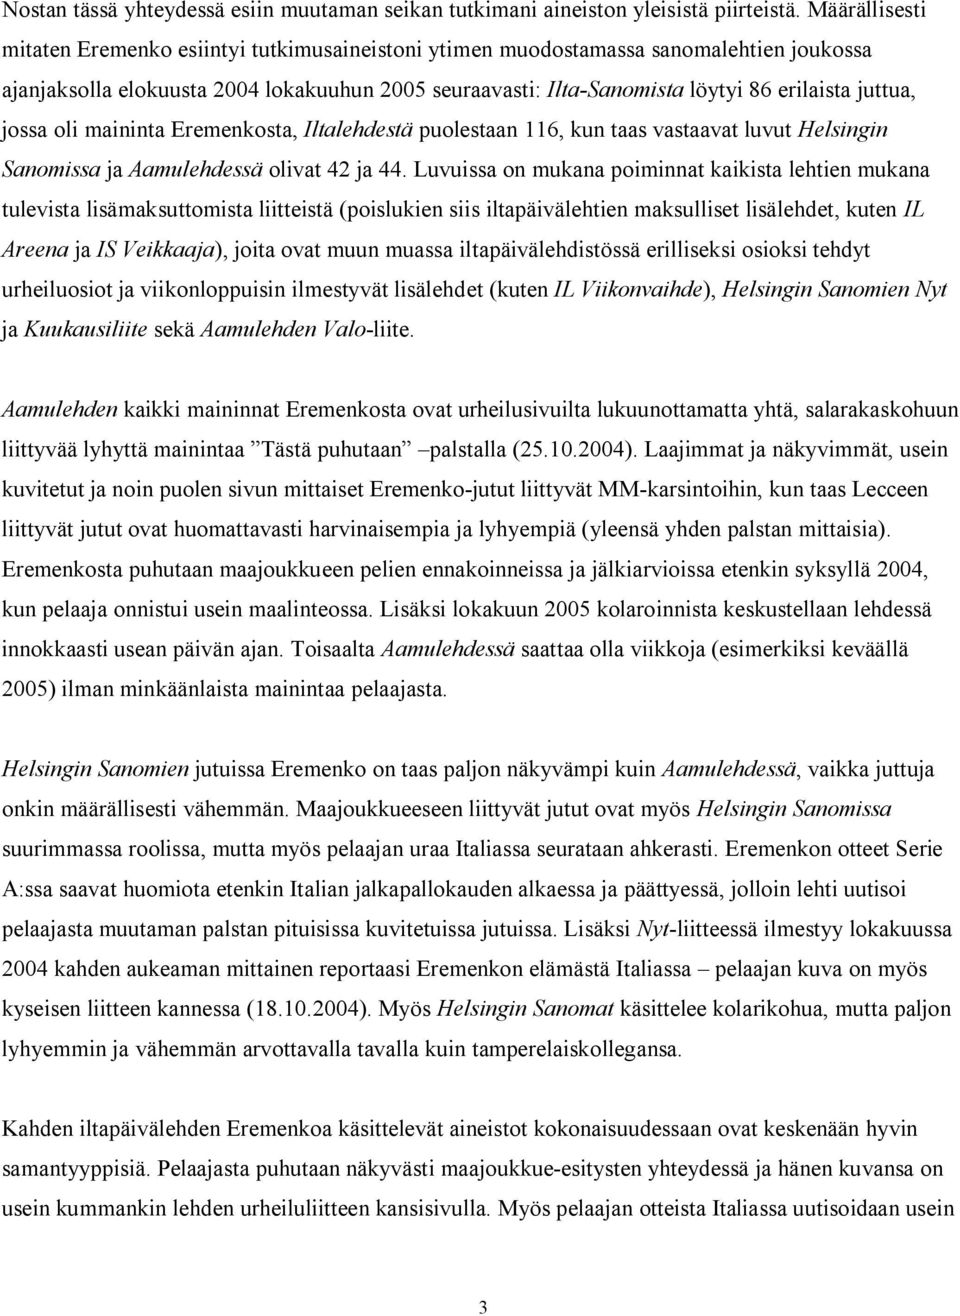 juttua, jossa oli maininta Eremenkosta, Iltalehdestä puolestaan 116, kun taas vastaavat luvut Helsingin Sanomissa ja Aamulehdessä olivat 42 ja 44.